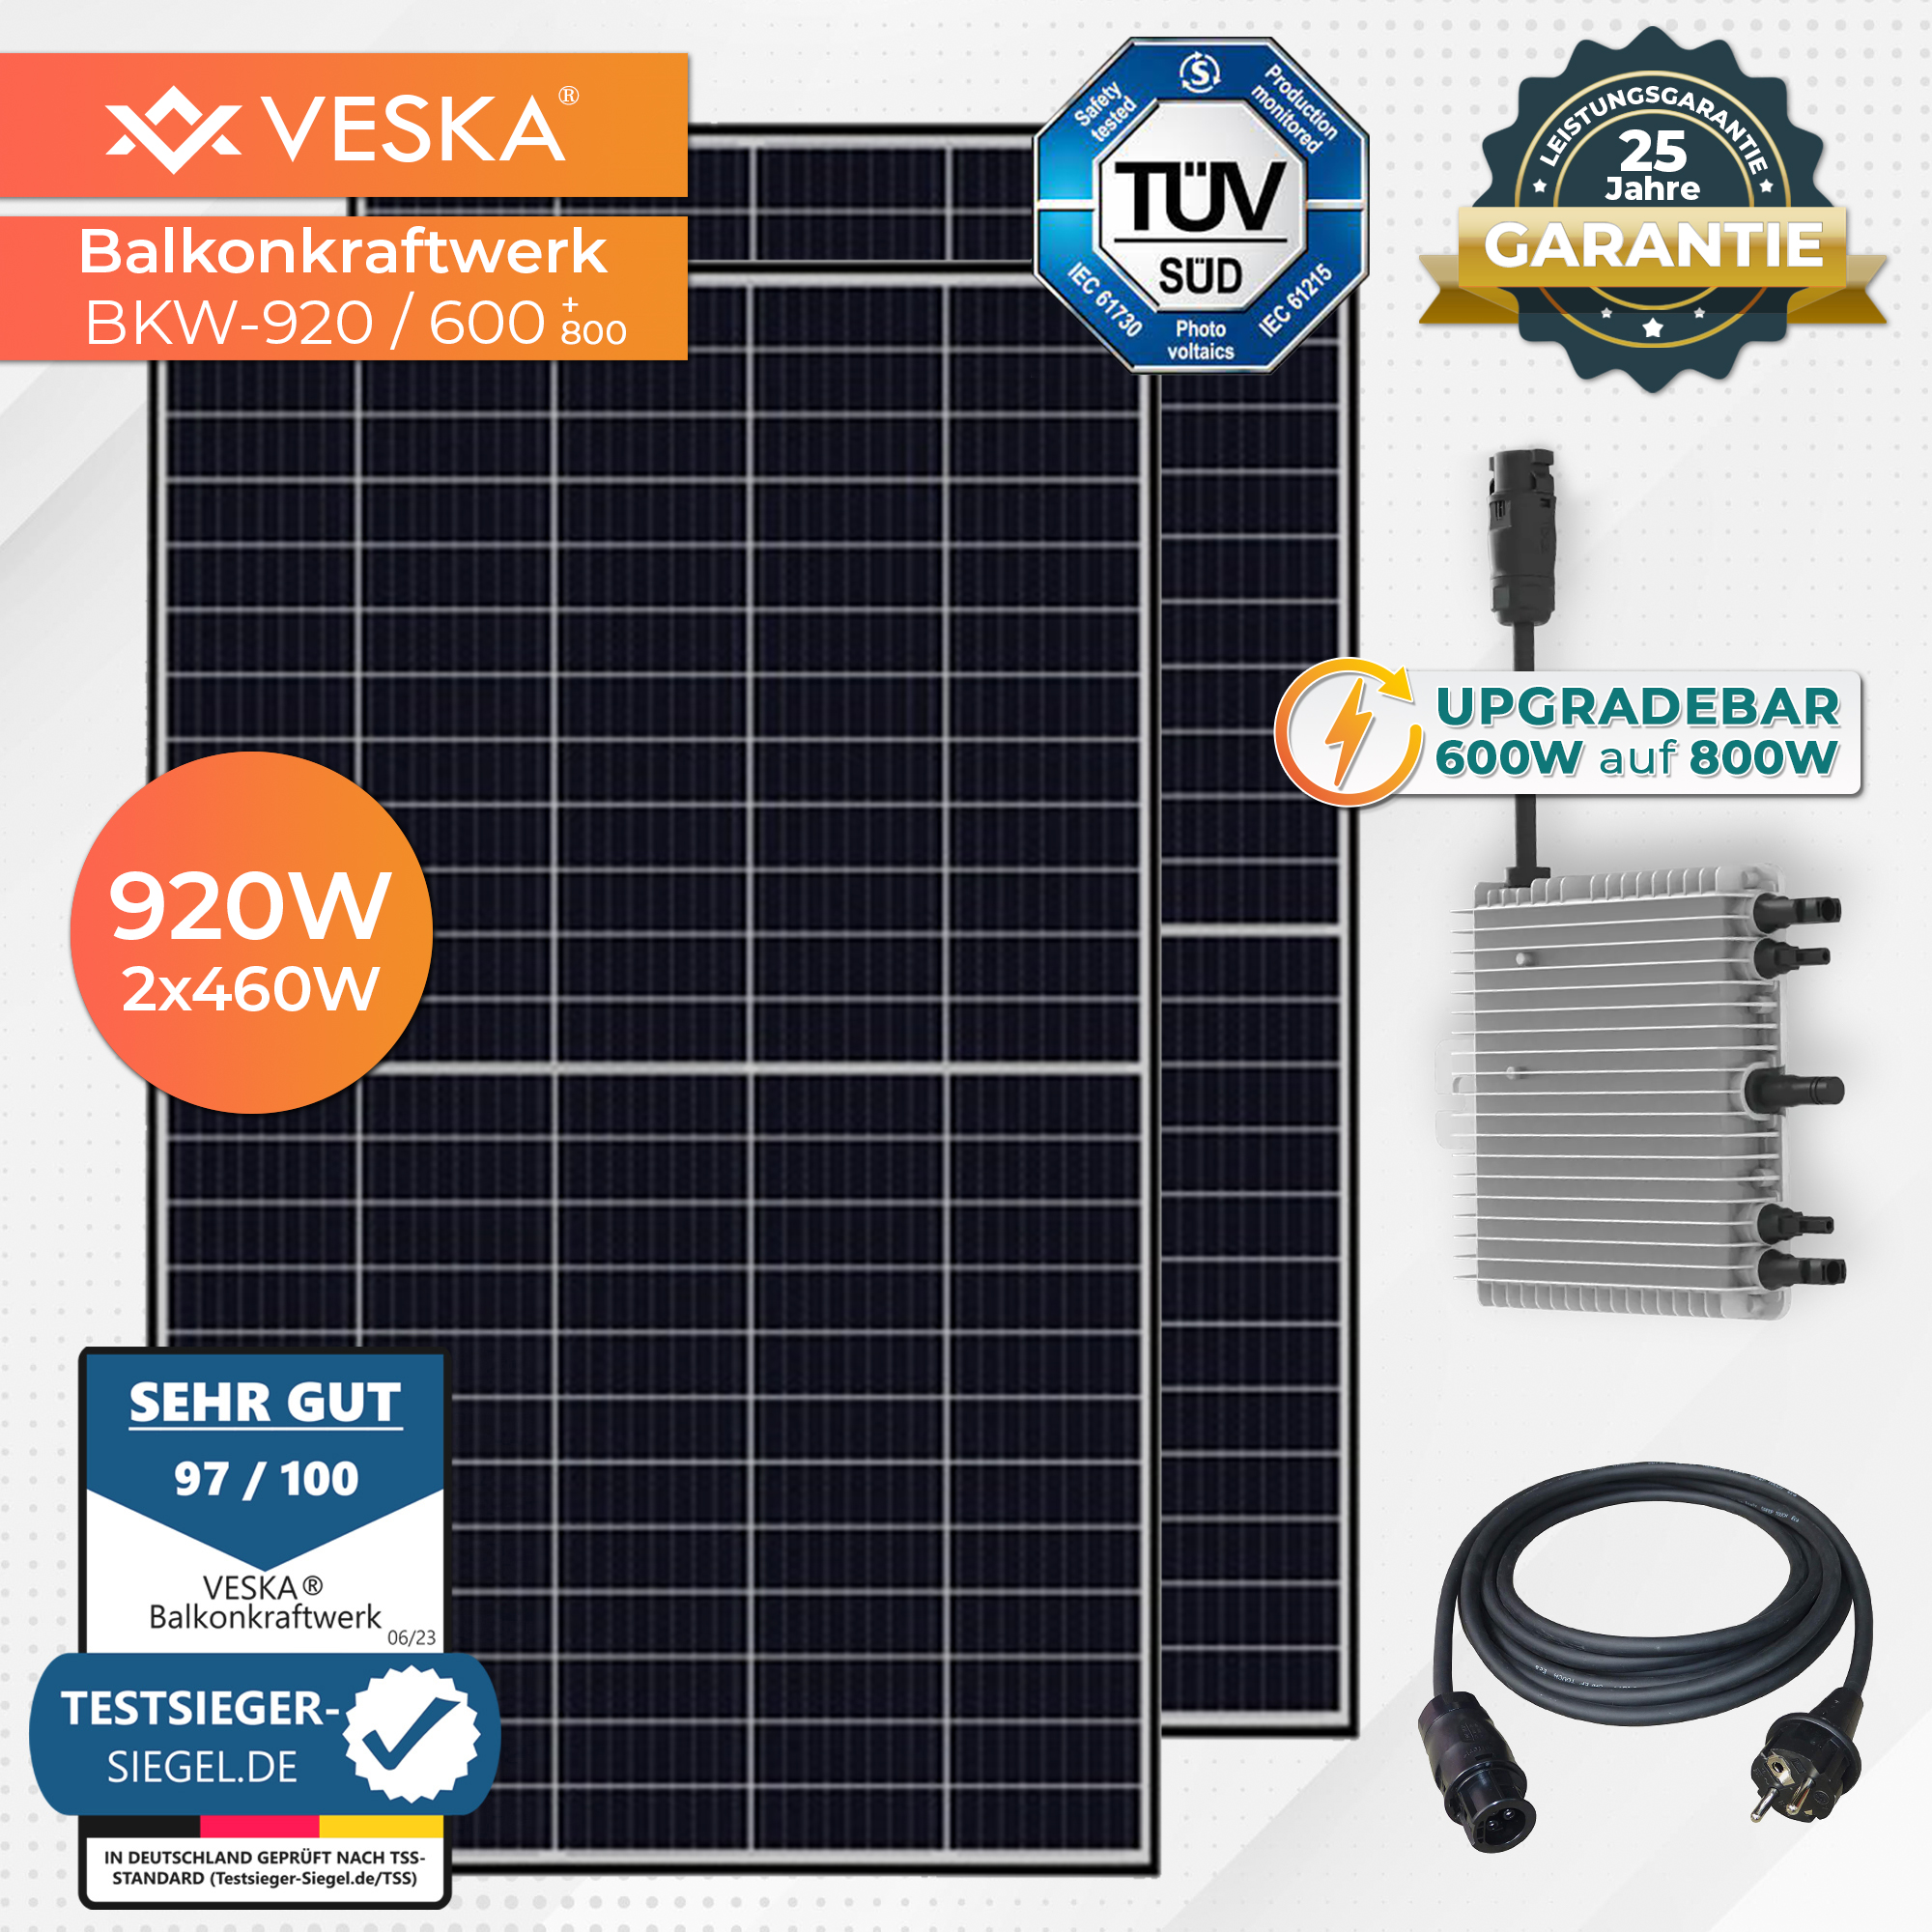 920W/600W (upgradebar 800W) PV Komplettset VESKA auf Balkon-Solaranlage